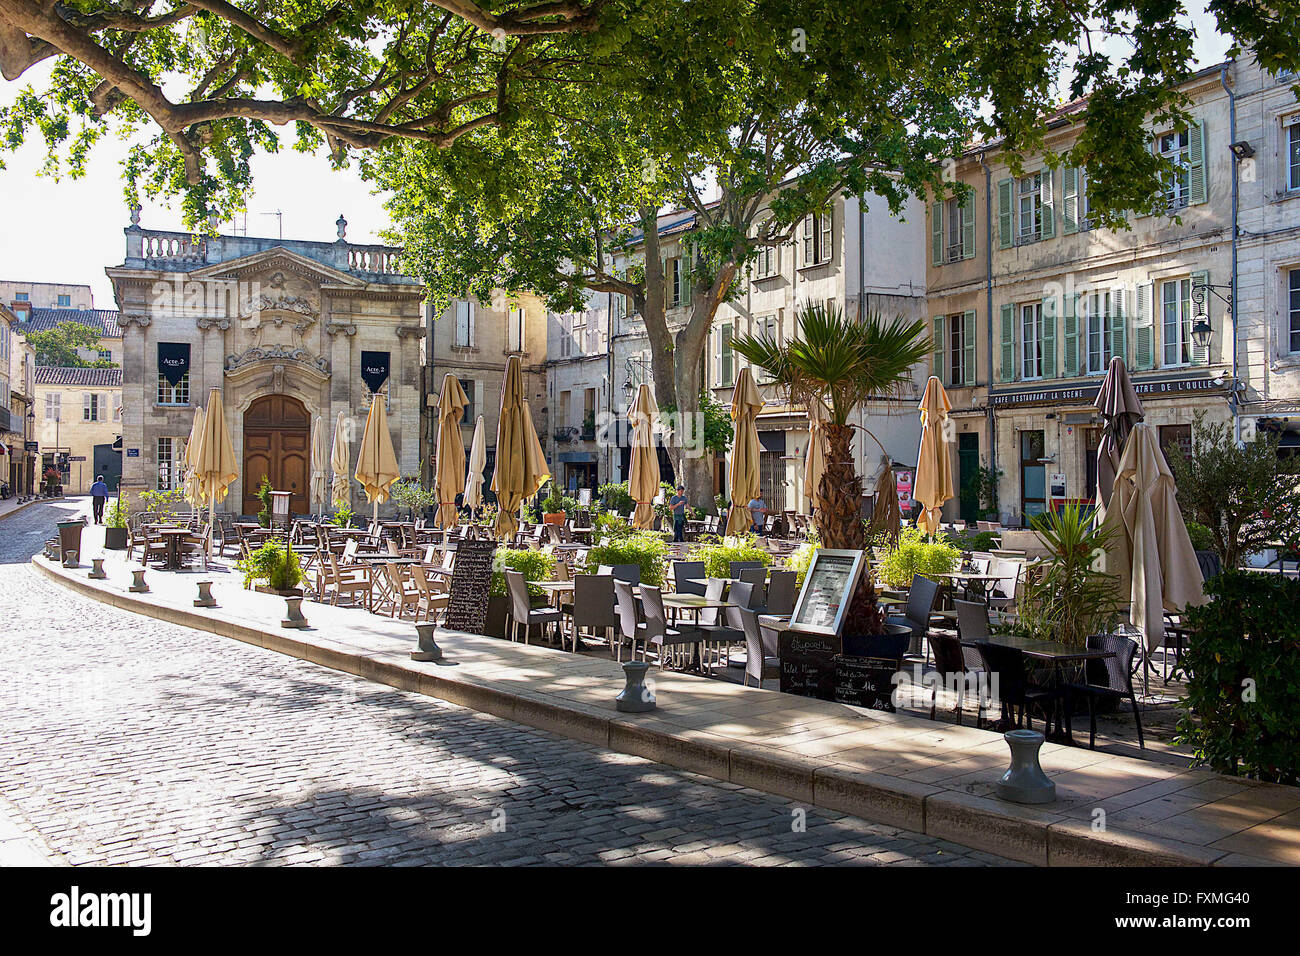 Historic Centre of Avignon, Avignon, France Stock Photo